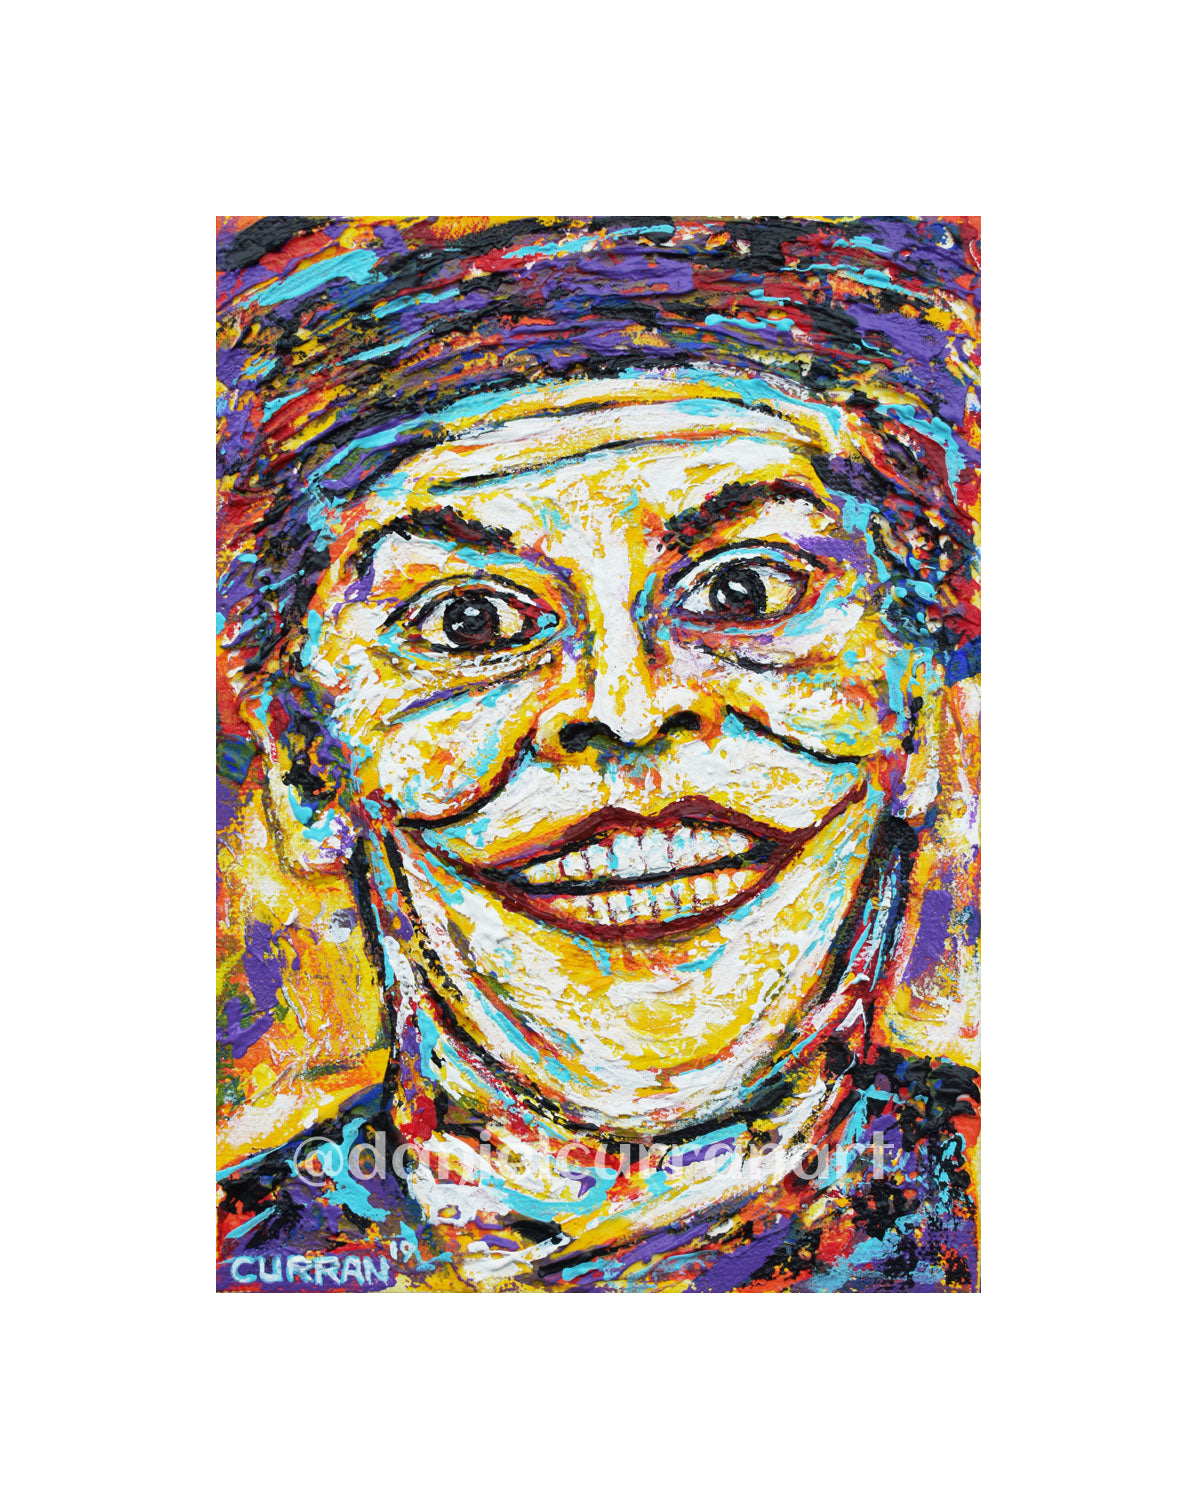 5"x 7" Joker Print (Matted) - Daniel Curran Art